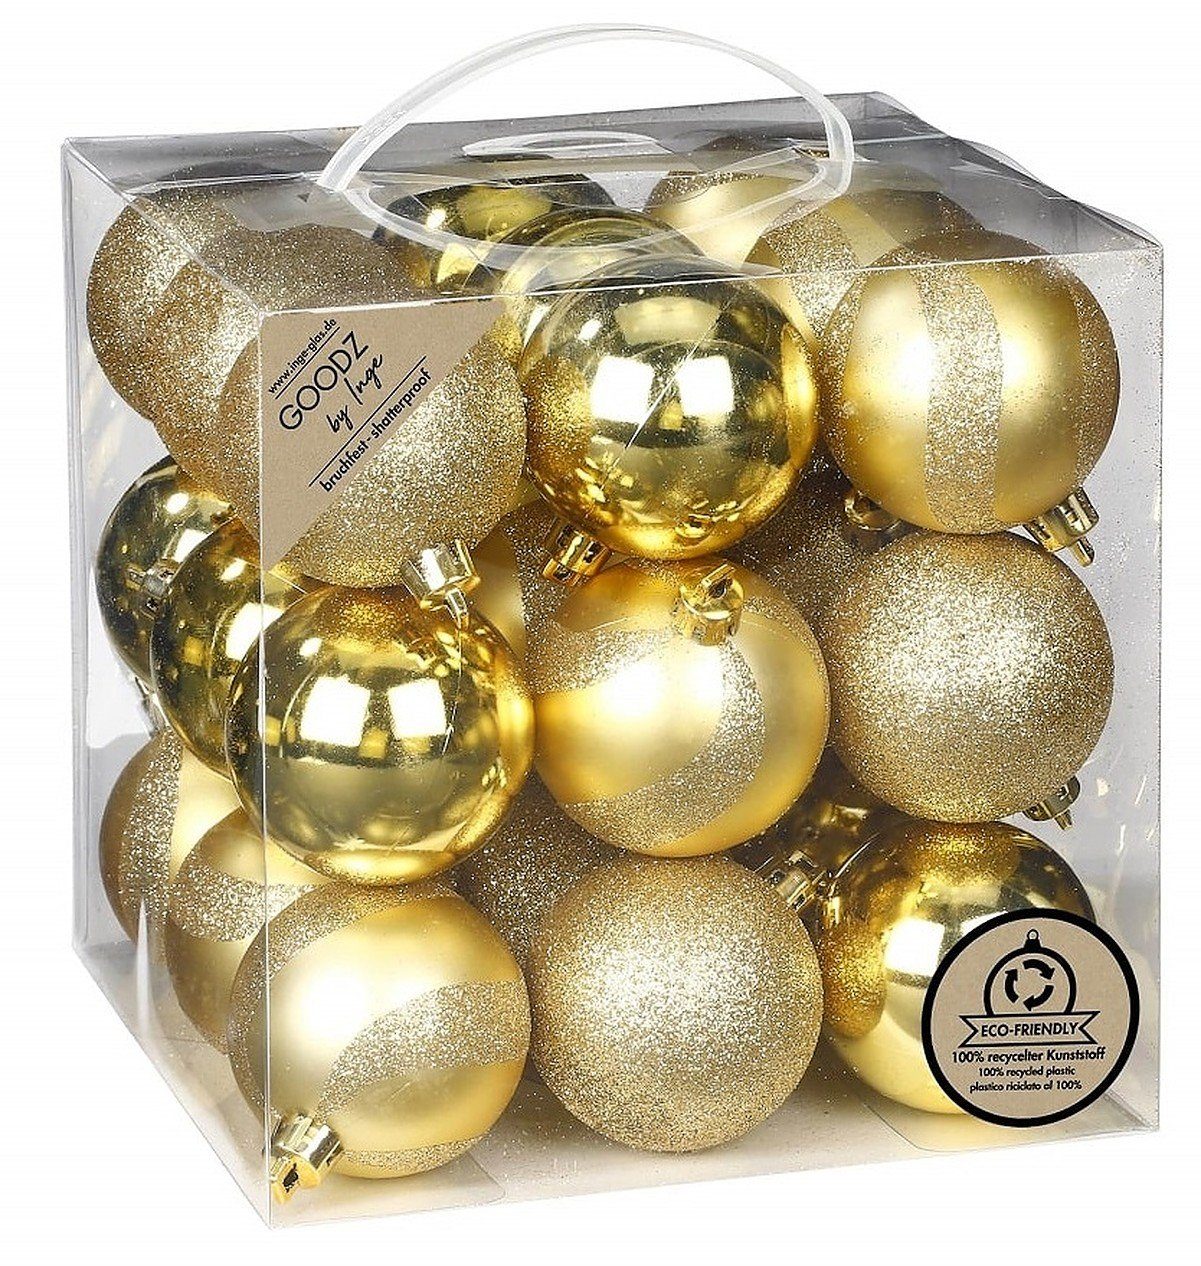 INGE-GLAS® Christbaumschmuck Inge's Weihnachtskugeln 27 Stück 6 cm Gold, Kunststoff, bruchfest, Baumdekoration, Baumschmuck, Weihnachtsdekoration